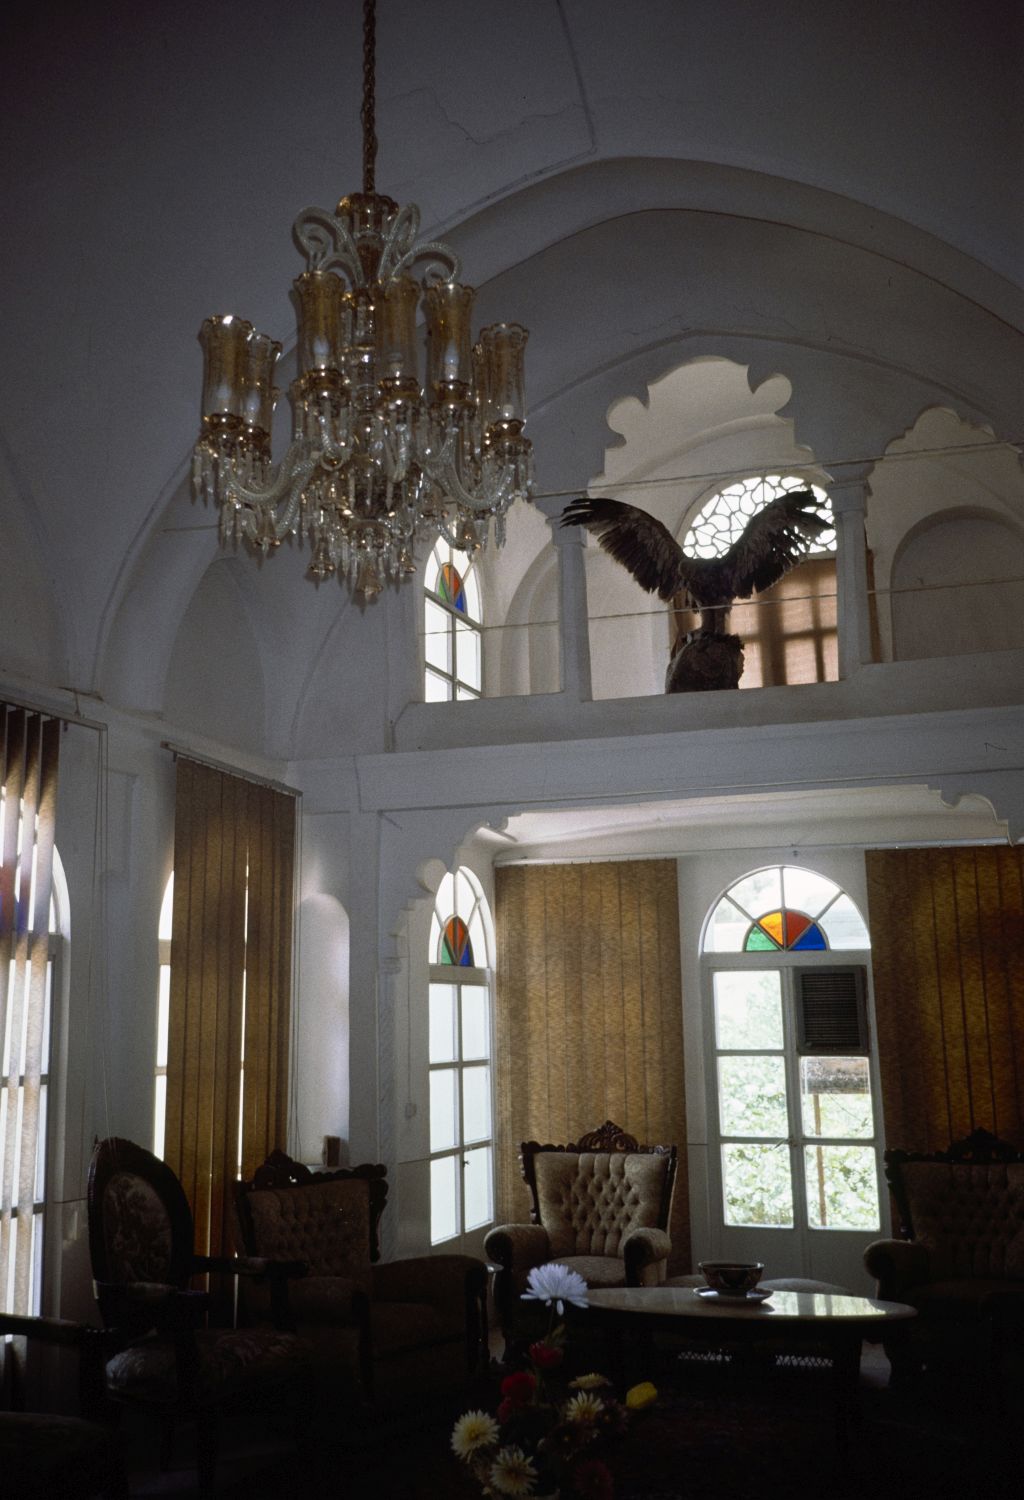 Khanah-i Yiganah - Interior view.